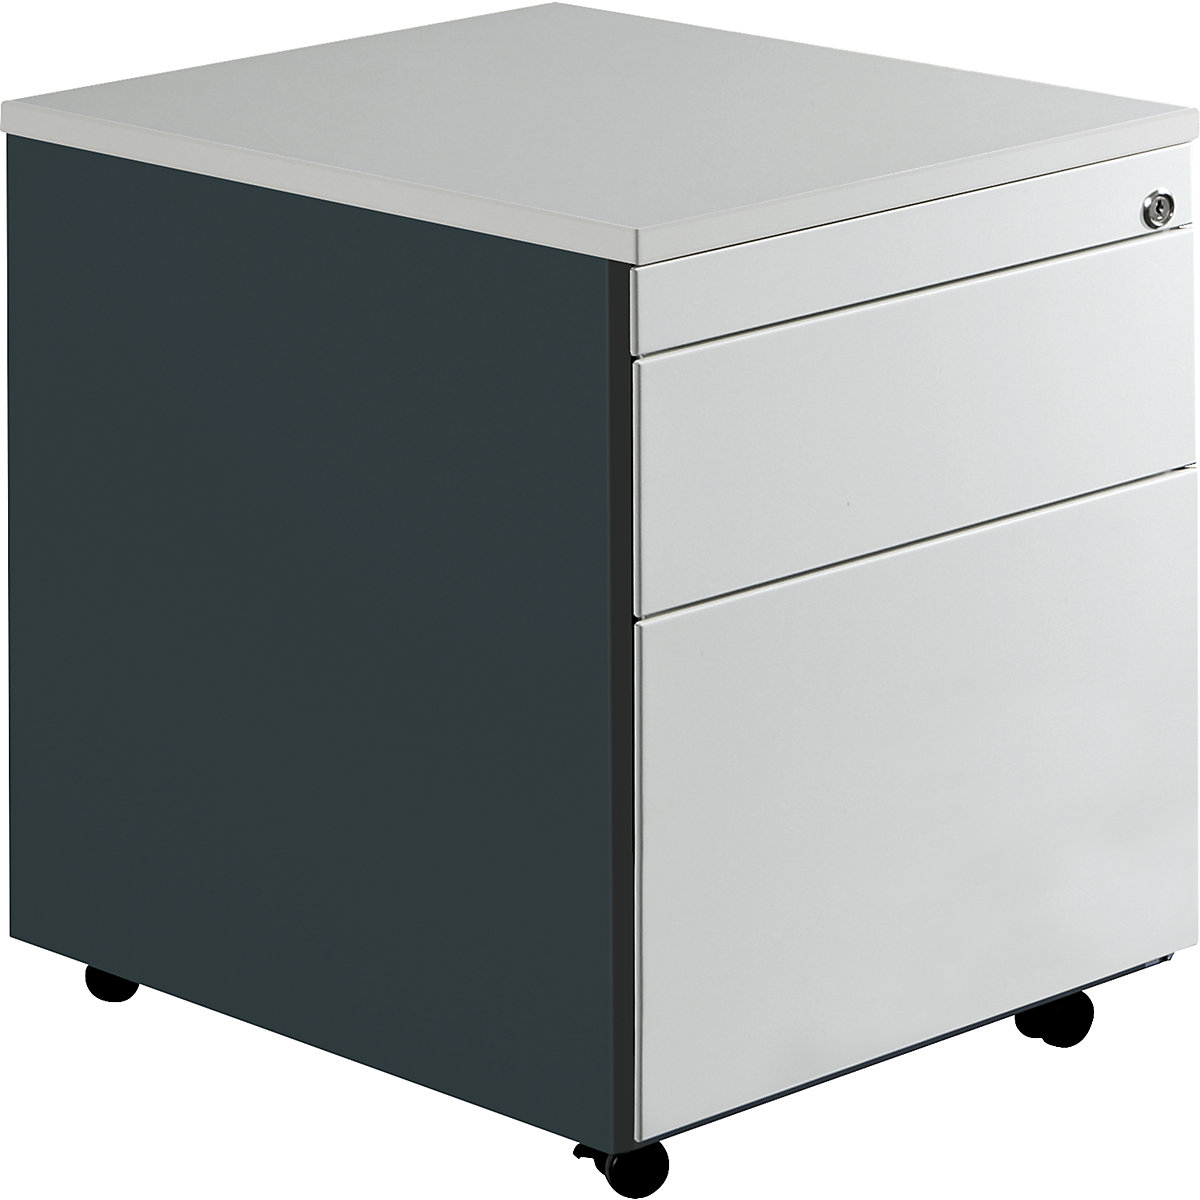 Zásuvkový kontajner s kolieskami – mauser, v x š 579 x 600 mm, 1 zásuvka na materiál, 1 závesná registratúra, antracitová / svetlošedá / svetlošedá-4